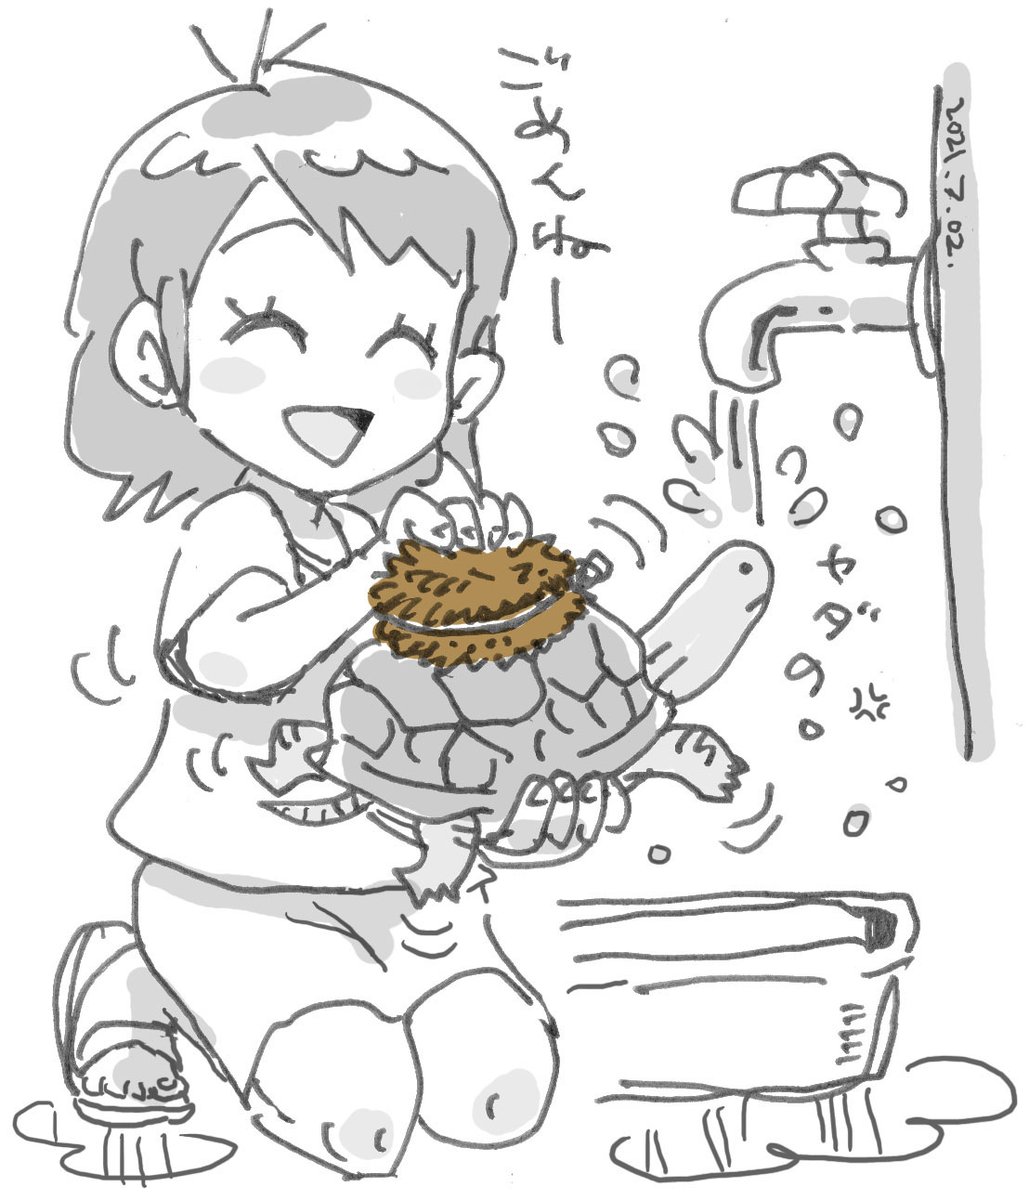 #たわしの日 
#束子の日
うちでは亀さんの甲羅と水槽磨き用で重宝してます。 